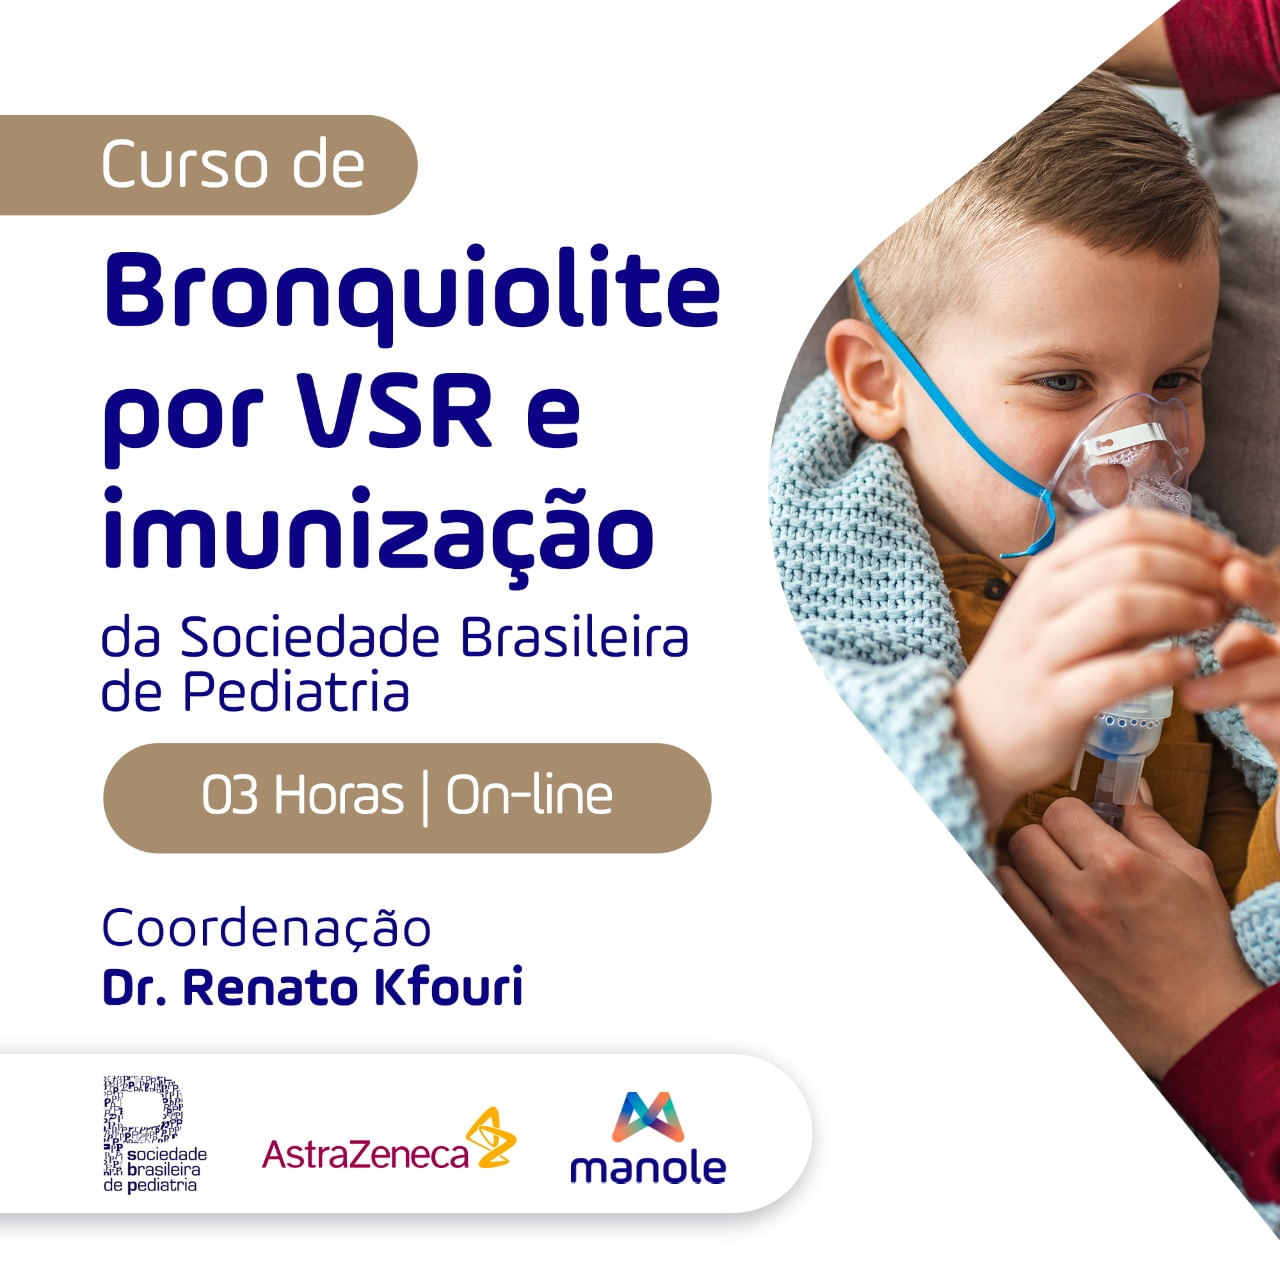 Curso-de-Bronquiolite-por-VSR-e-imunizacao-da-Sociedade-Brasileira-de-Pediatria